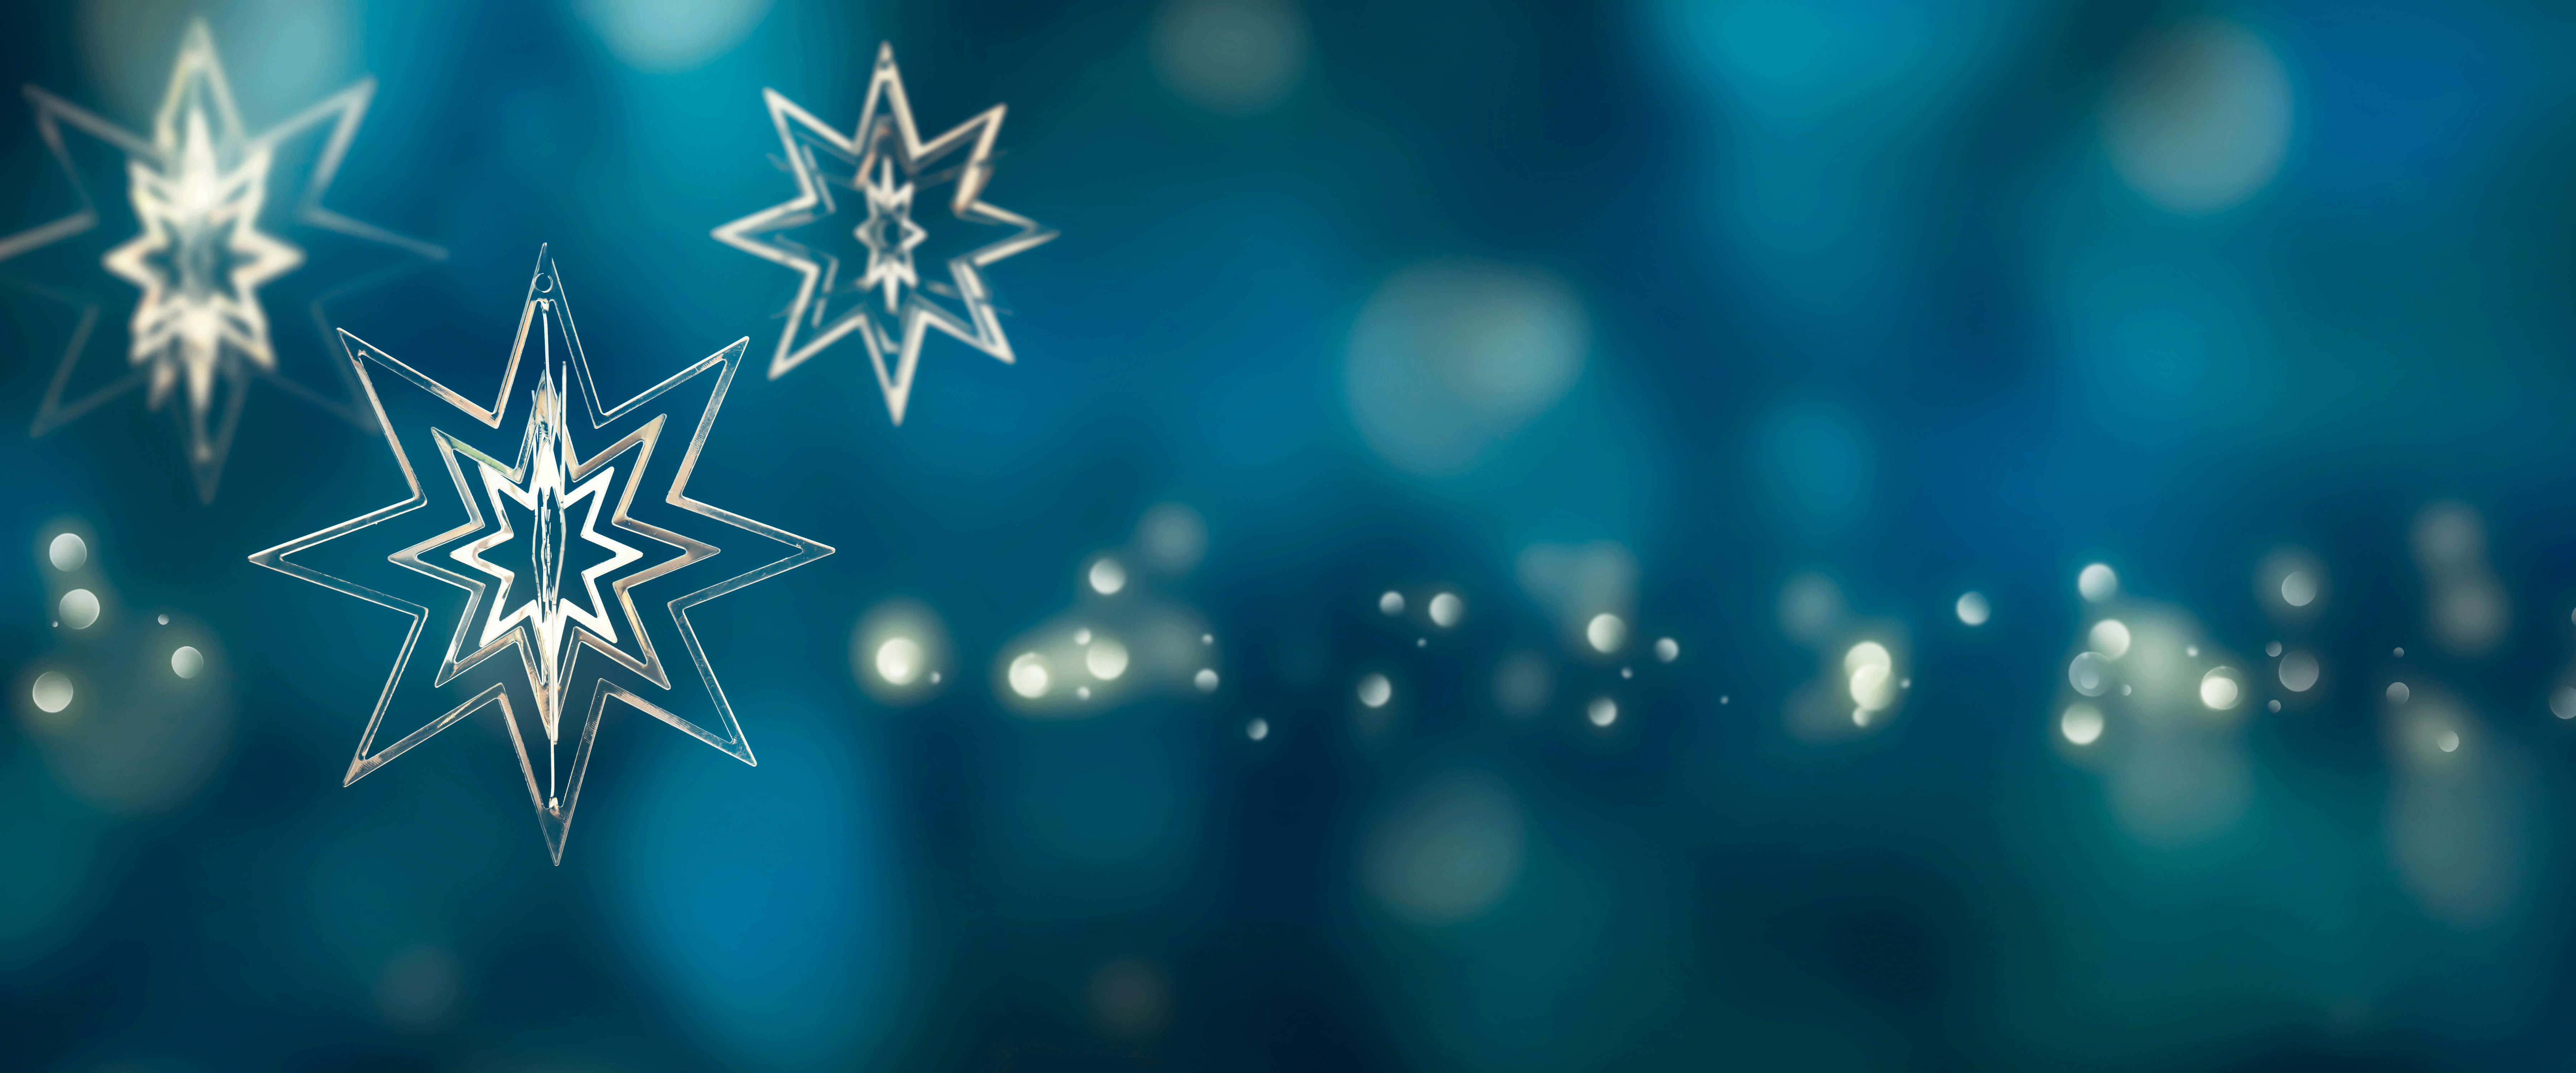 Goldene Sterne auf blauem Hintergrund vermitteln weihnachtliche Stimmung. Copyright: iStock/winyuu